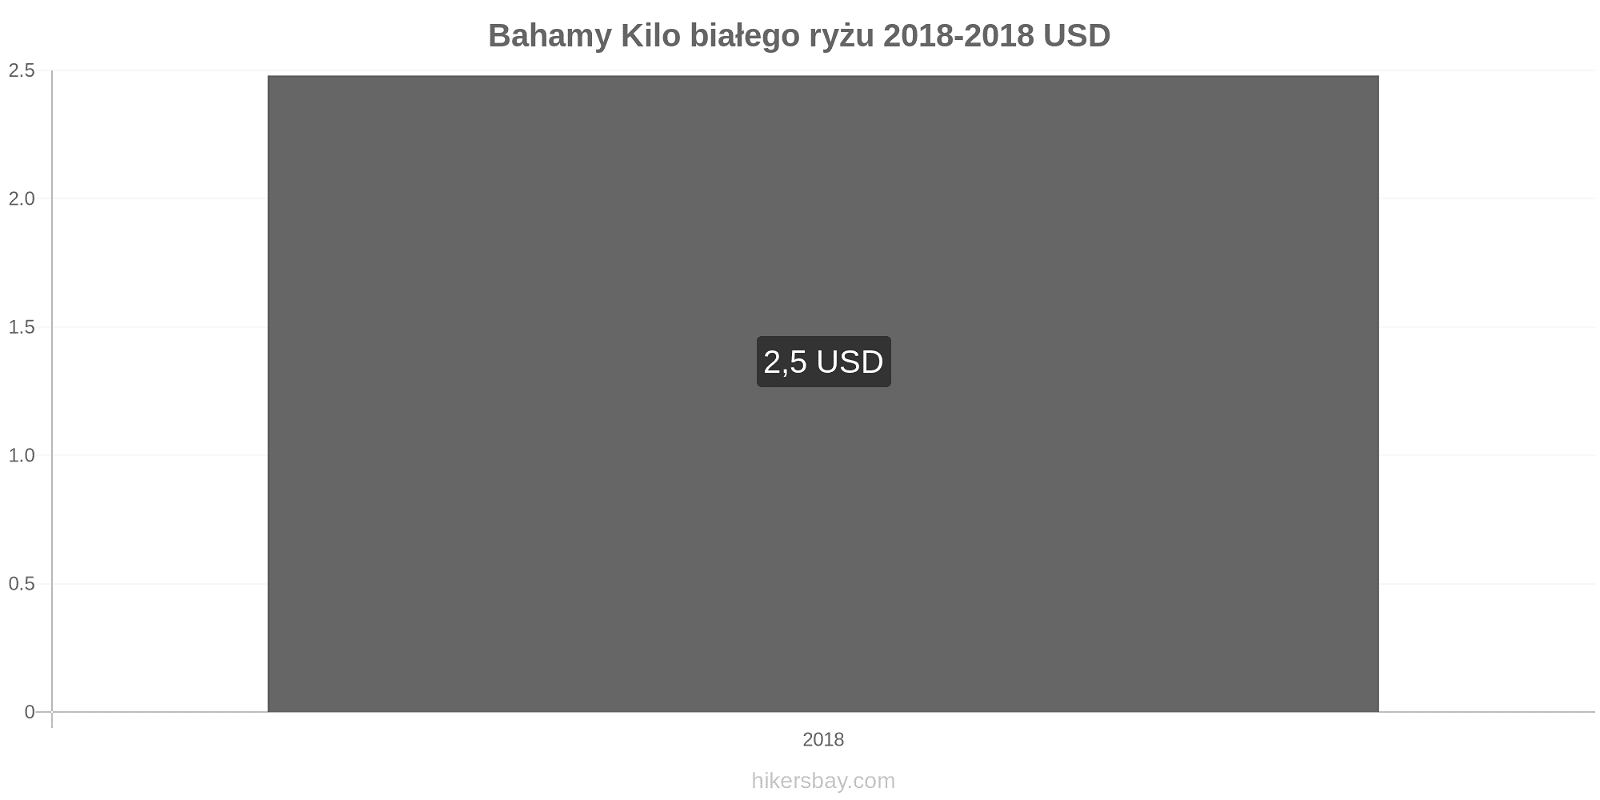 Bahamy zmiany cen Kilo białego ryżu hikersbay.com